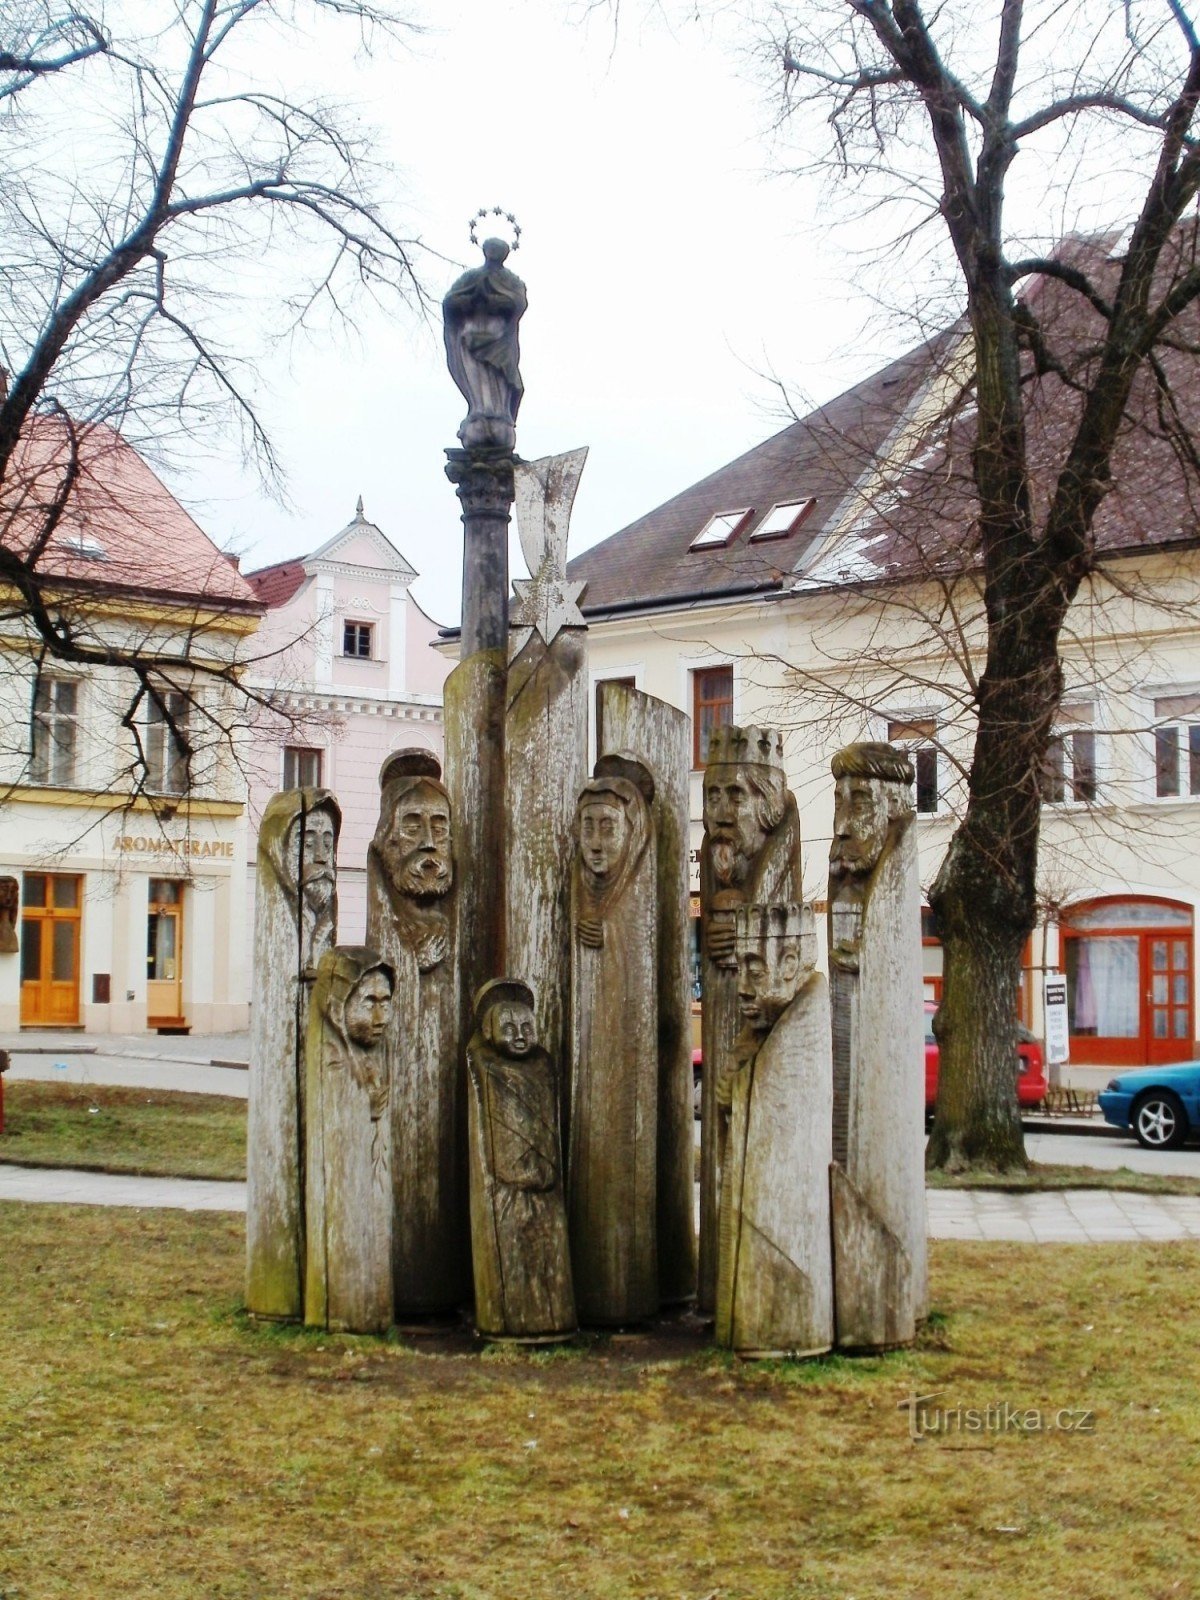 Třebechovice pod Oreb - julekrybbe i træ på pladsen